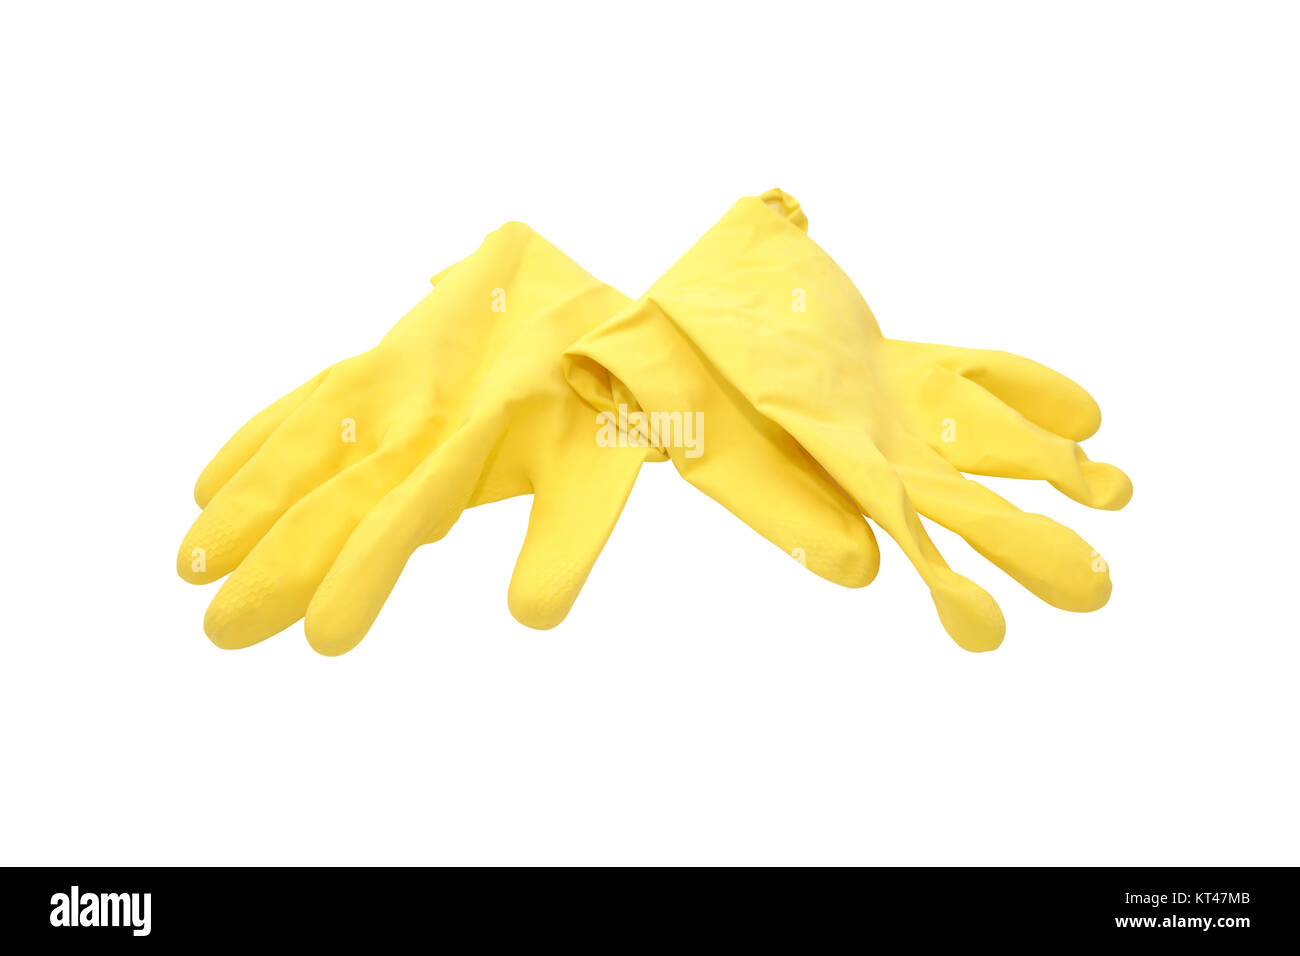 Paire de gants en caoutchouc jaune sur fond blanc. Isolé avec clipping path Banque D'Images